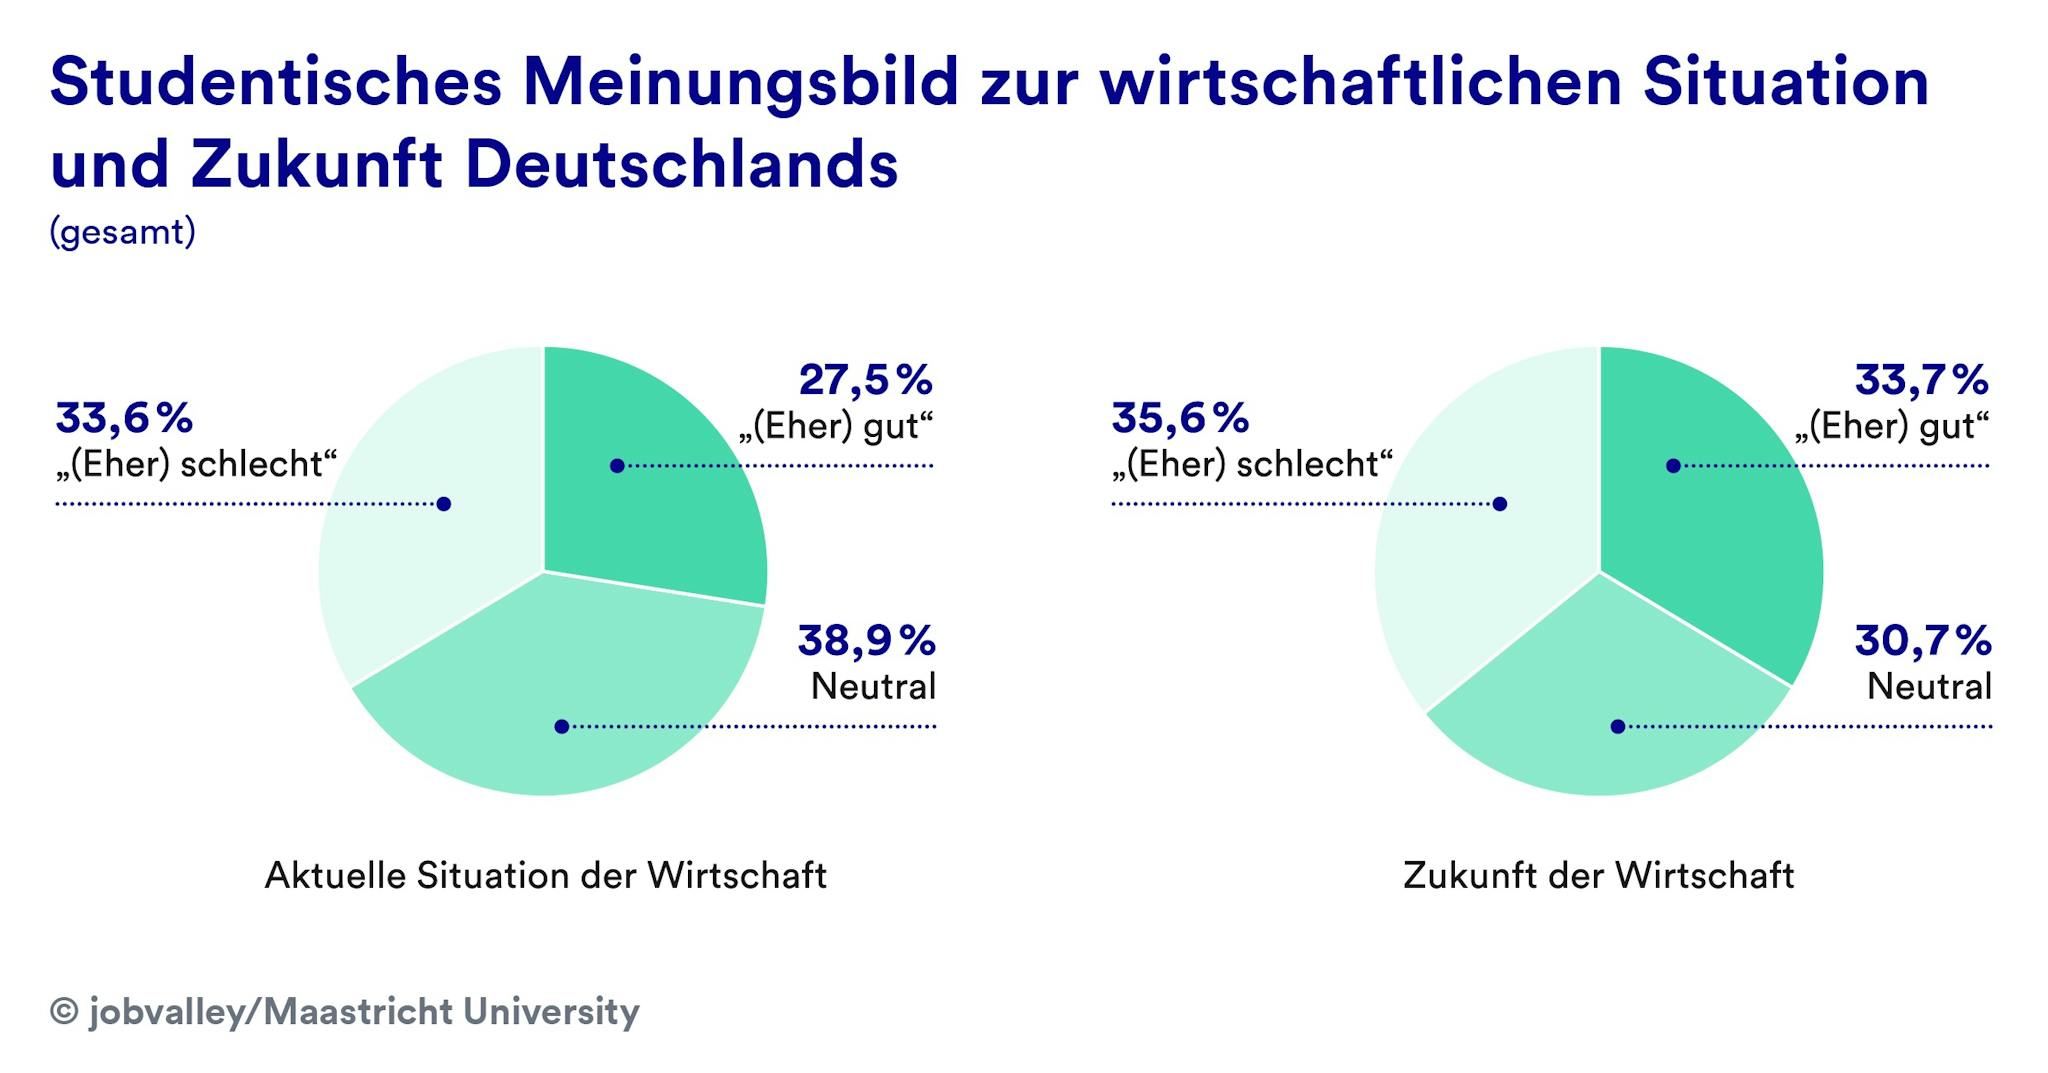 Studentisches Meinungsbild zur wirtschaftlichen Situation und Zukunft Deutschlands 